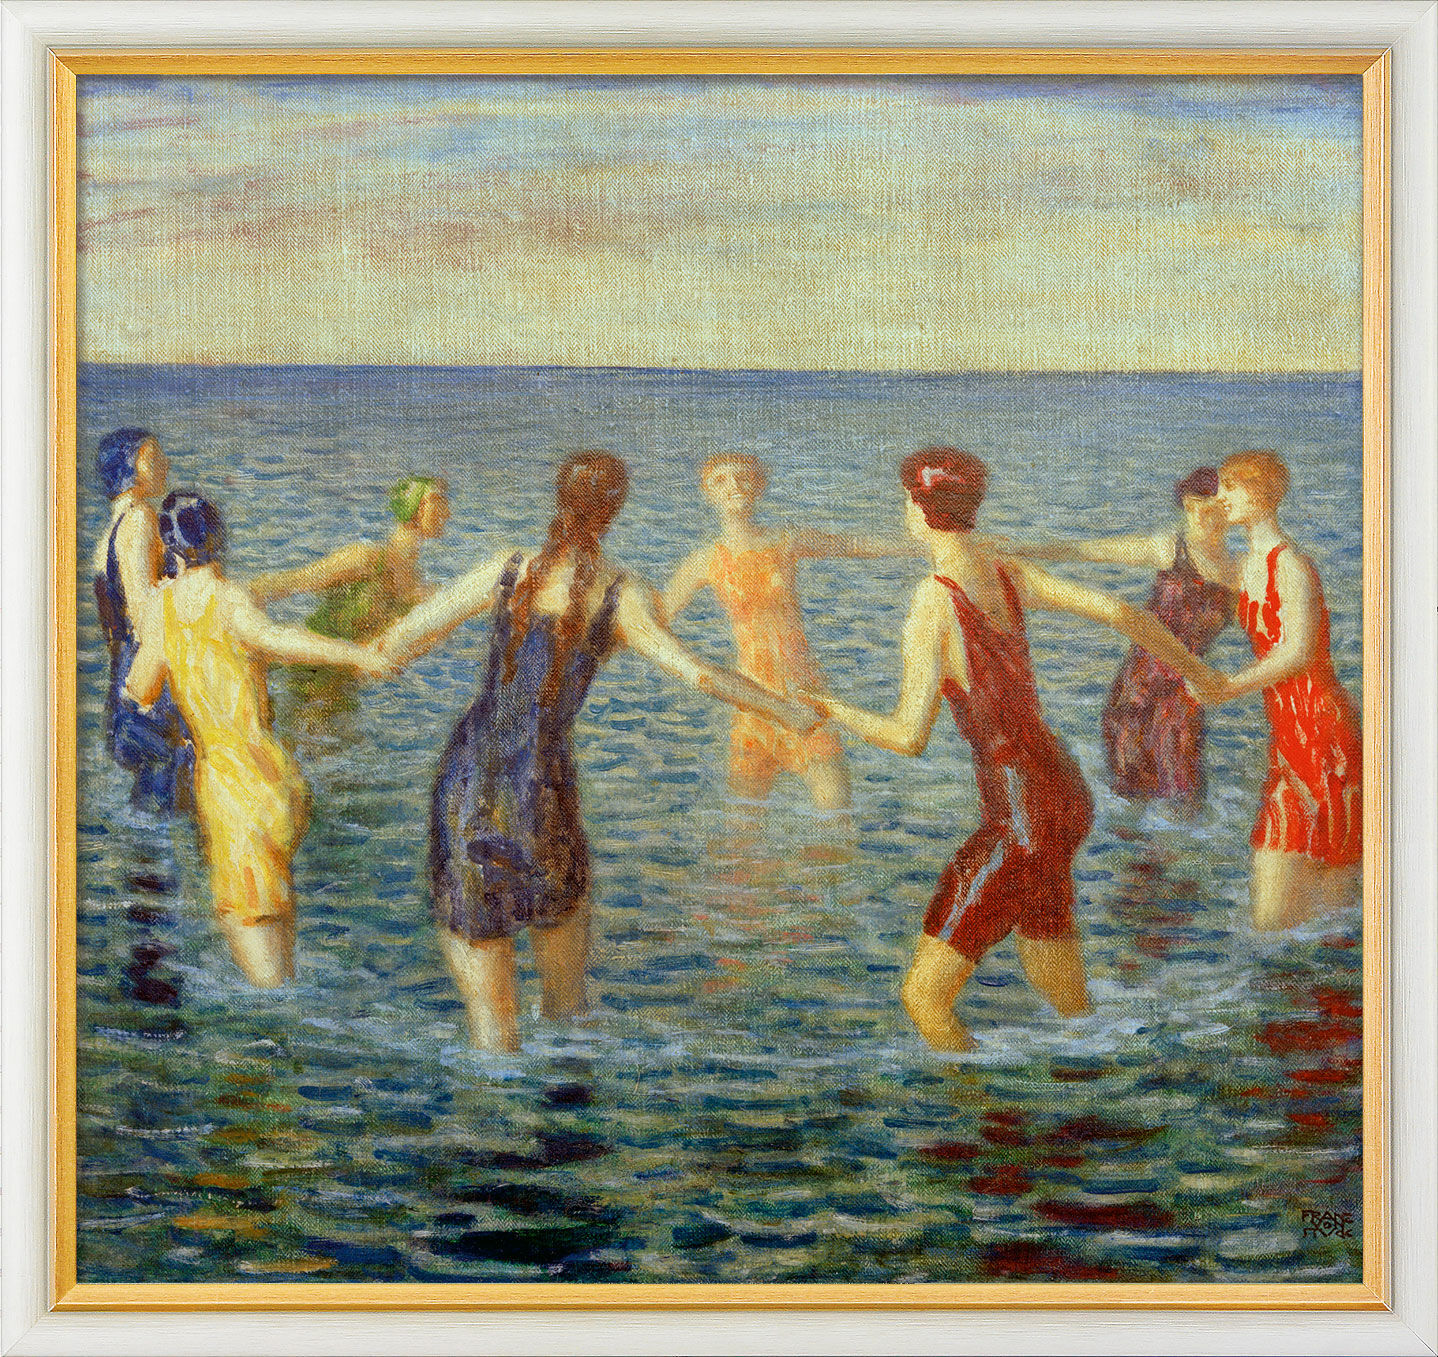 Picture "Bathing Women" (c. 1920), framed by Franz von Stuck